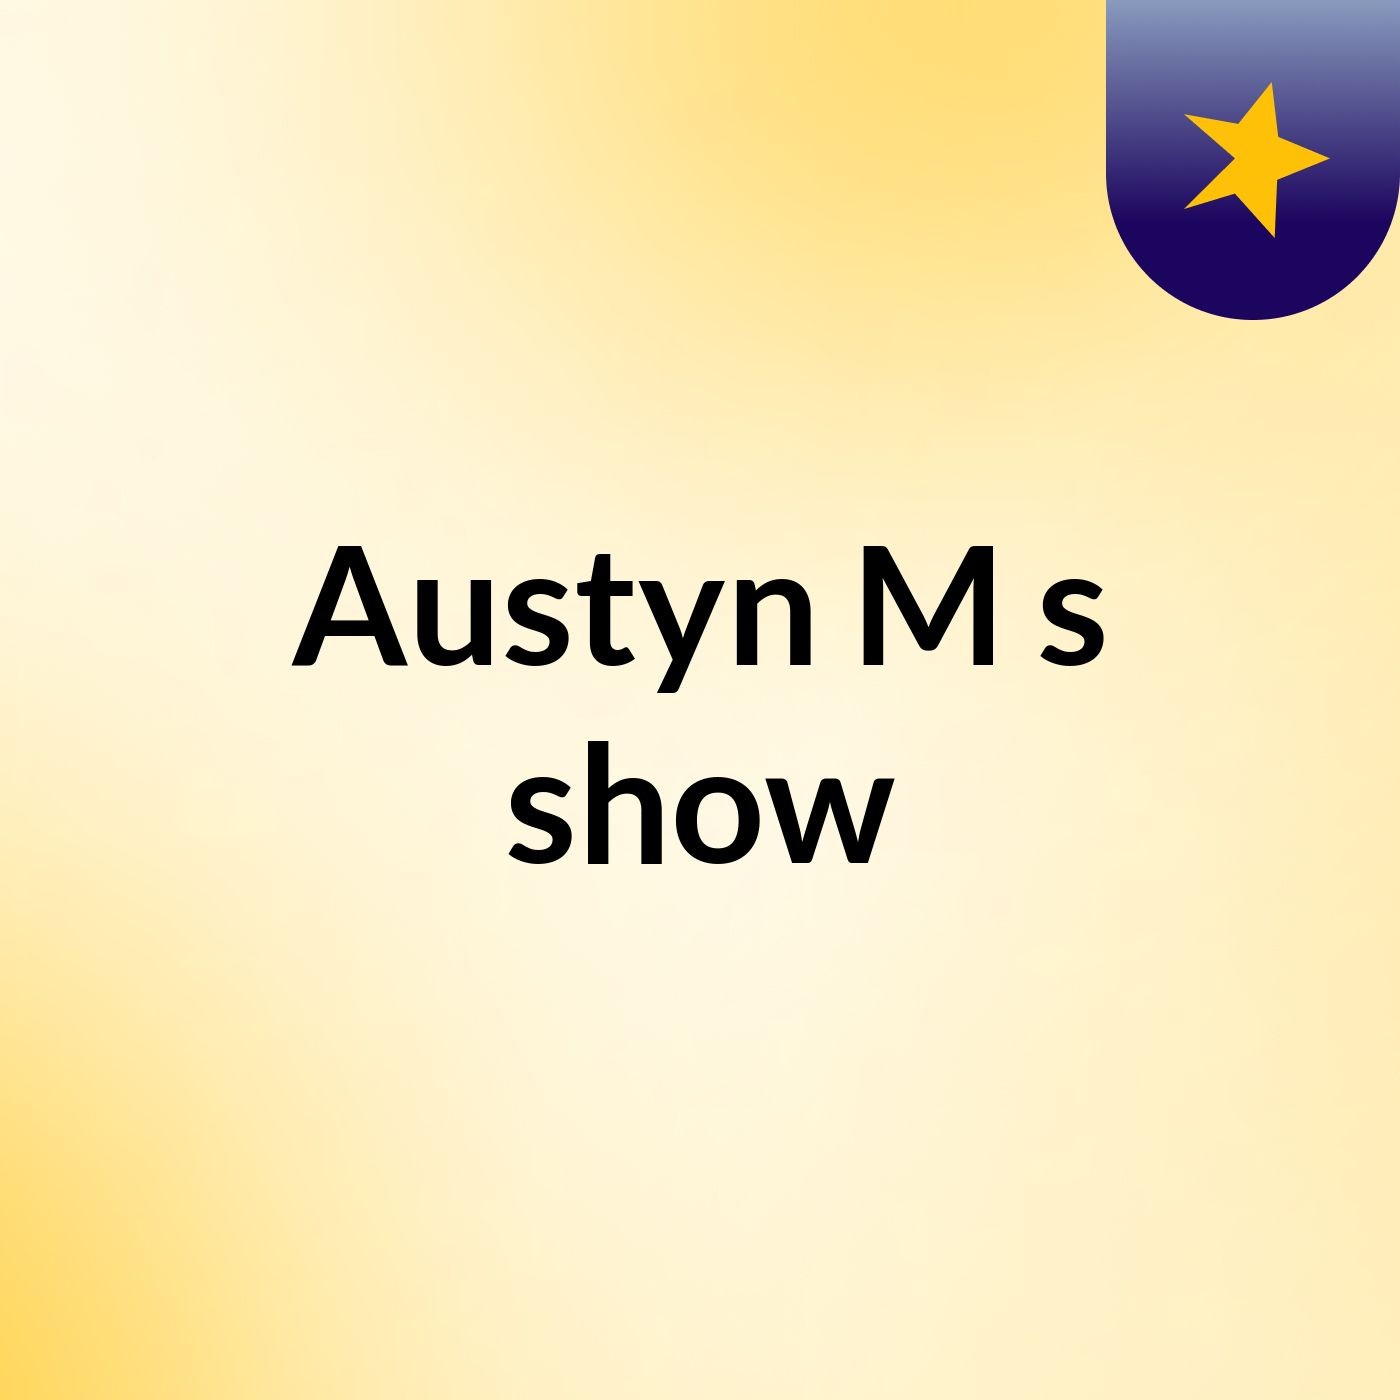 Austyn M's show